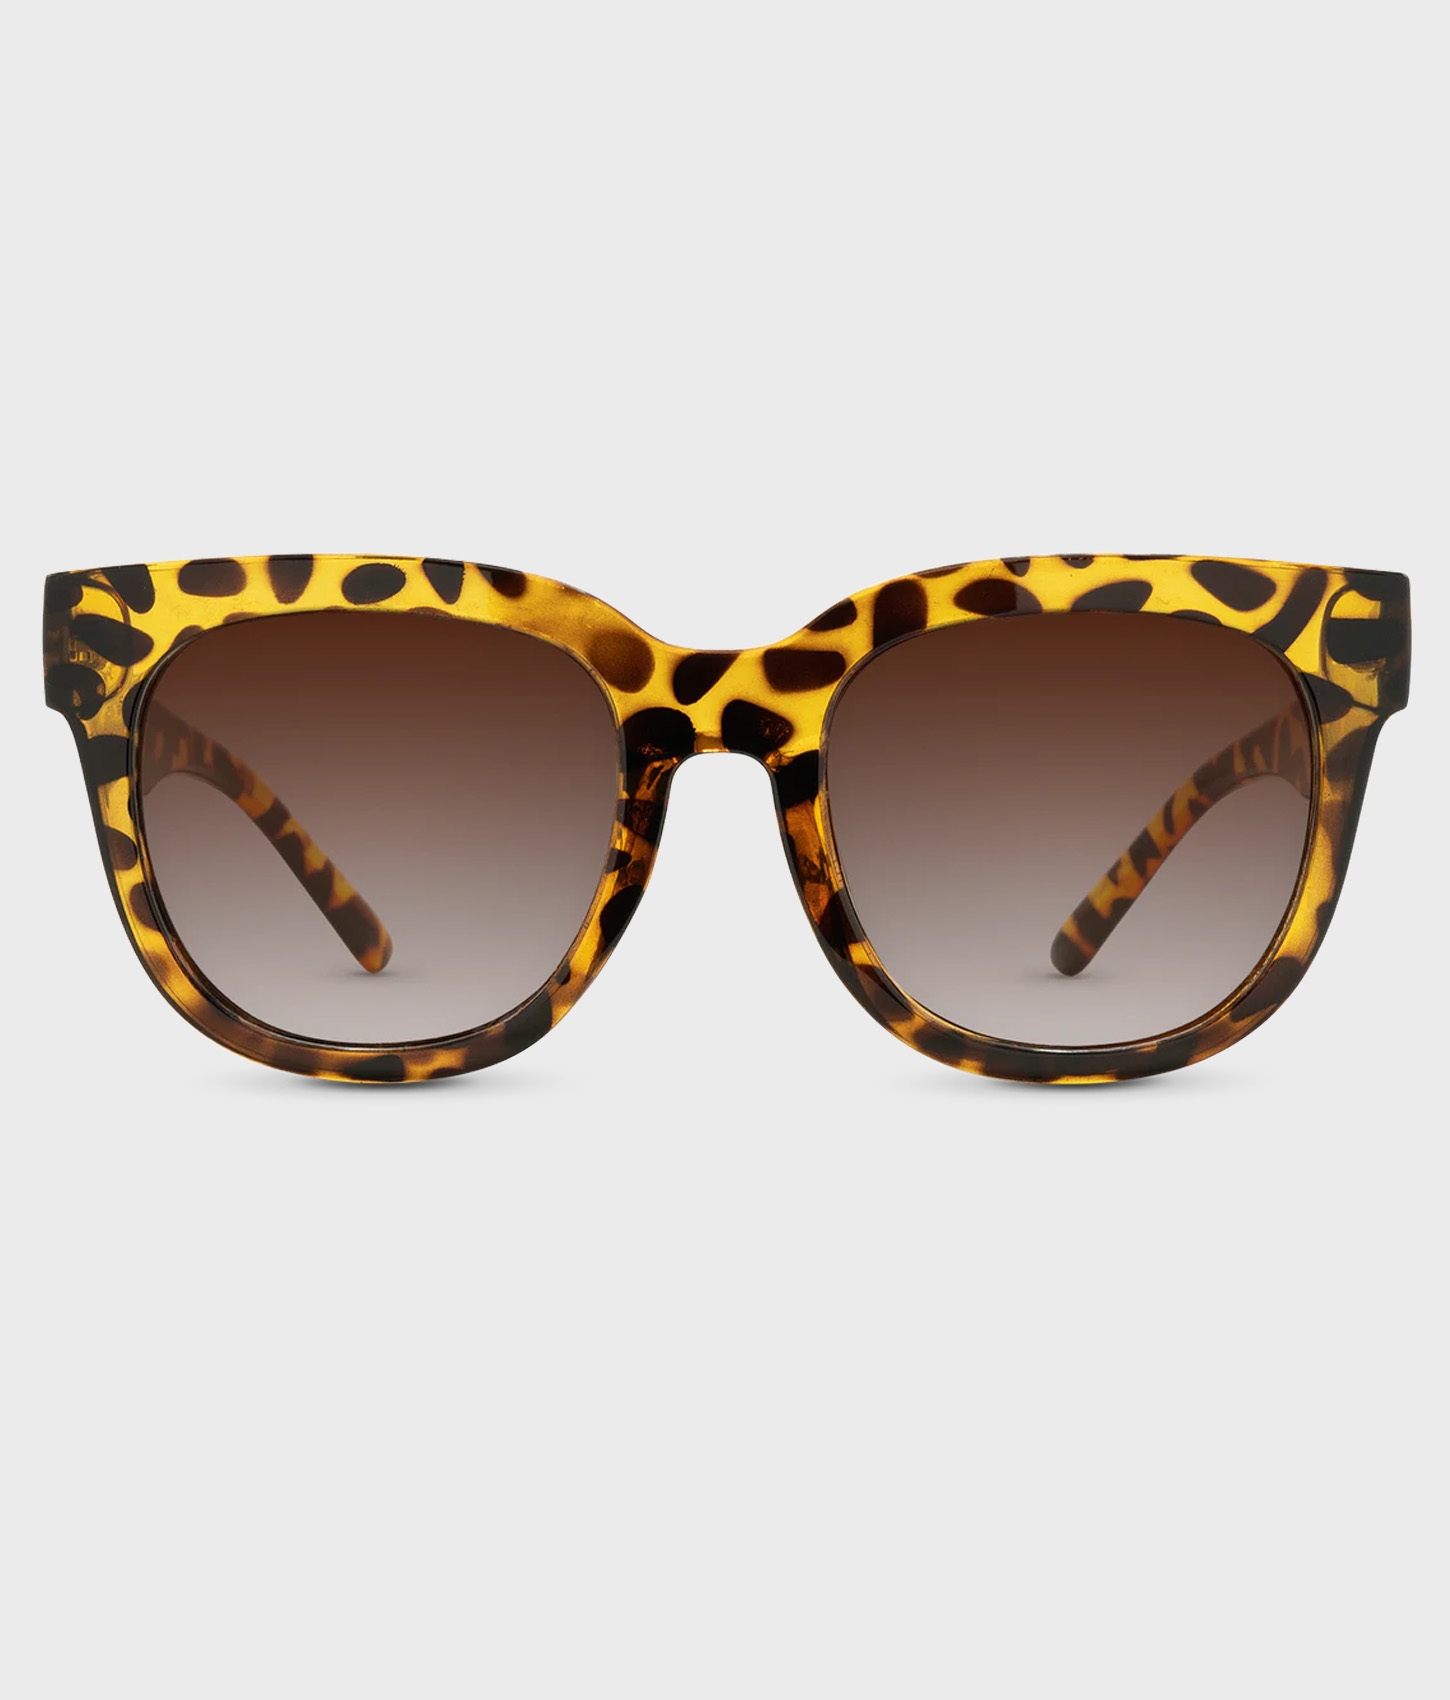 Chatham Polarized Sunglasses